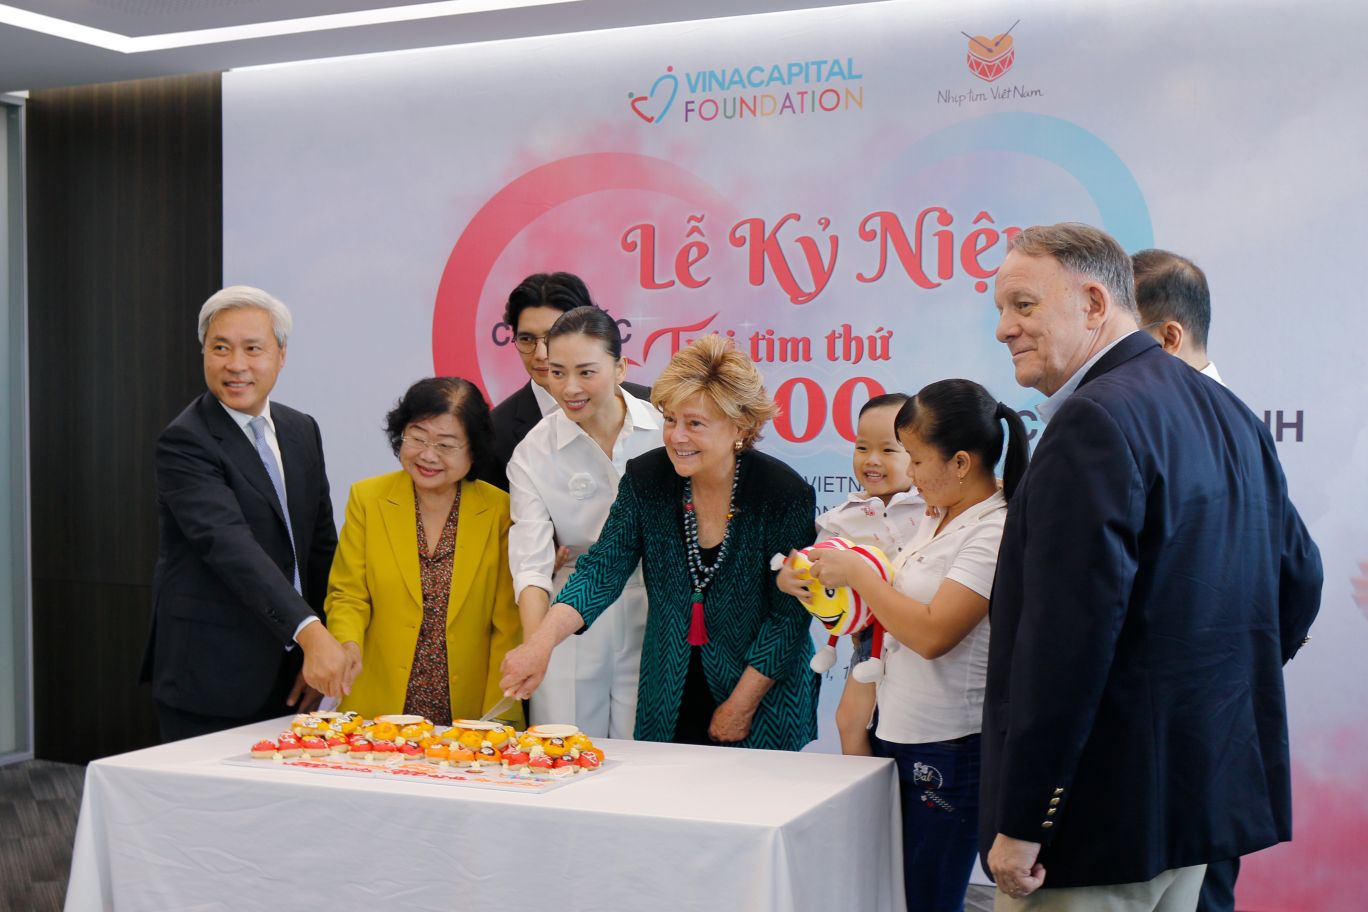 Các vị khách cùng cắt chiếc bánh kỉ niệm cột mốc Nhịp tim Việt Nam kỷ niệm cột mốc trái tim thứ 9.000 được chữa lành